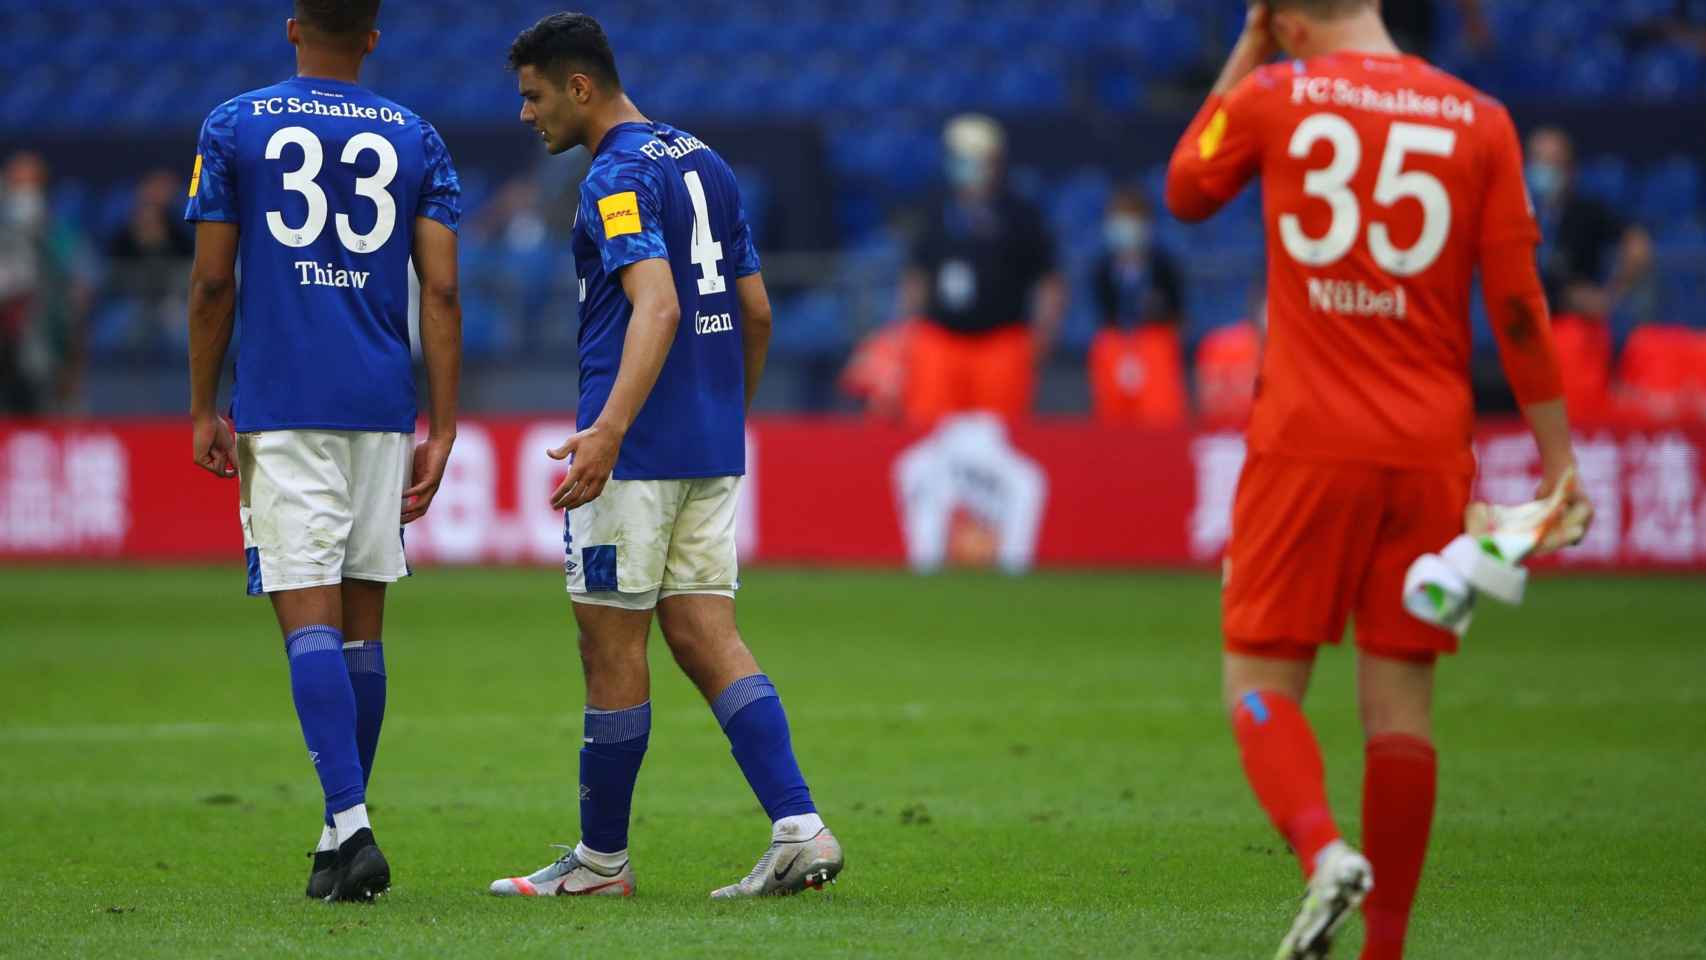 El Schalke suma 2 puntos de 28 posibles desde que volvió el fútbol